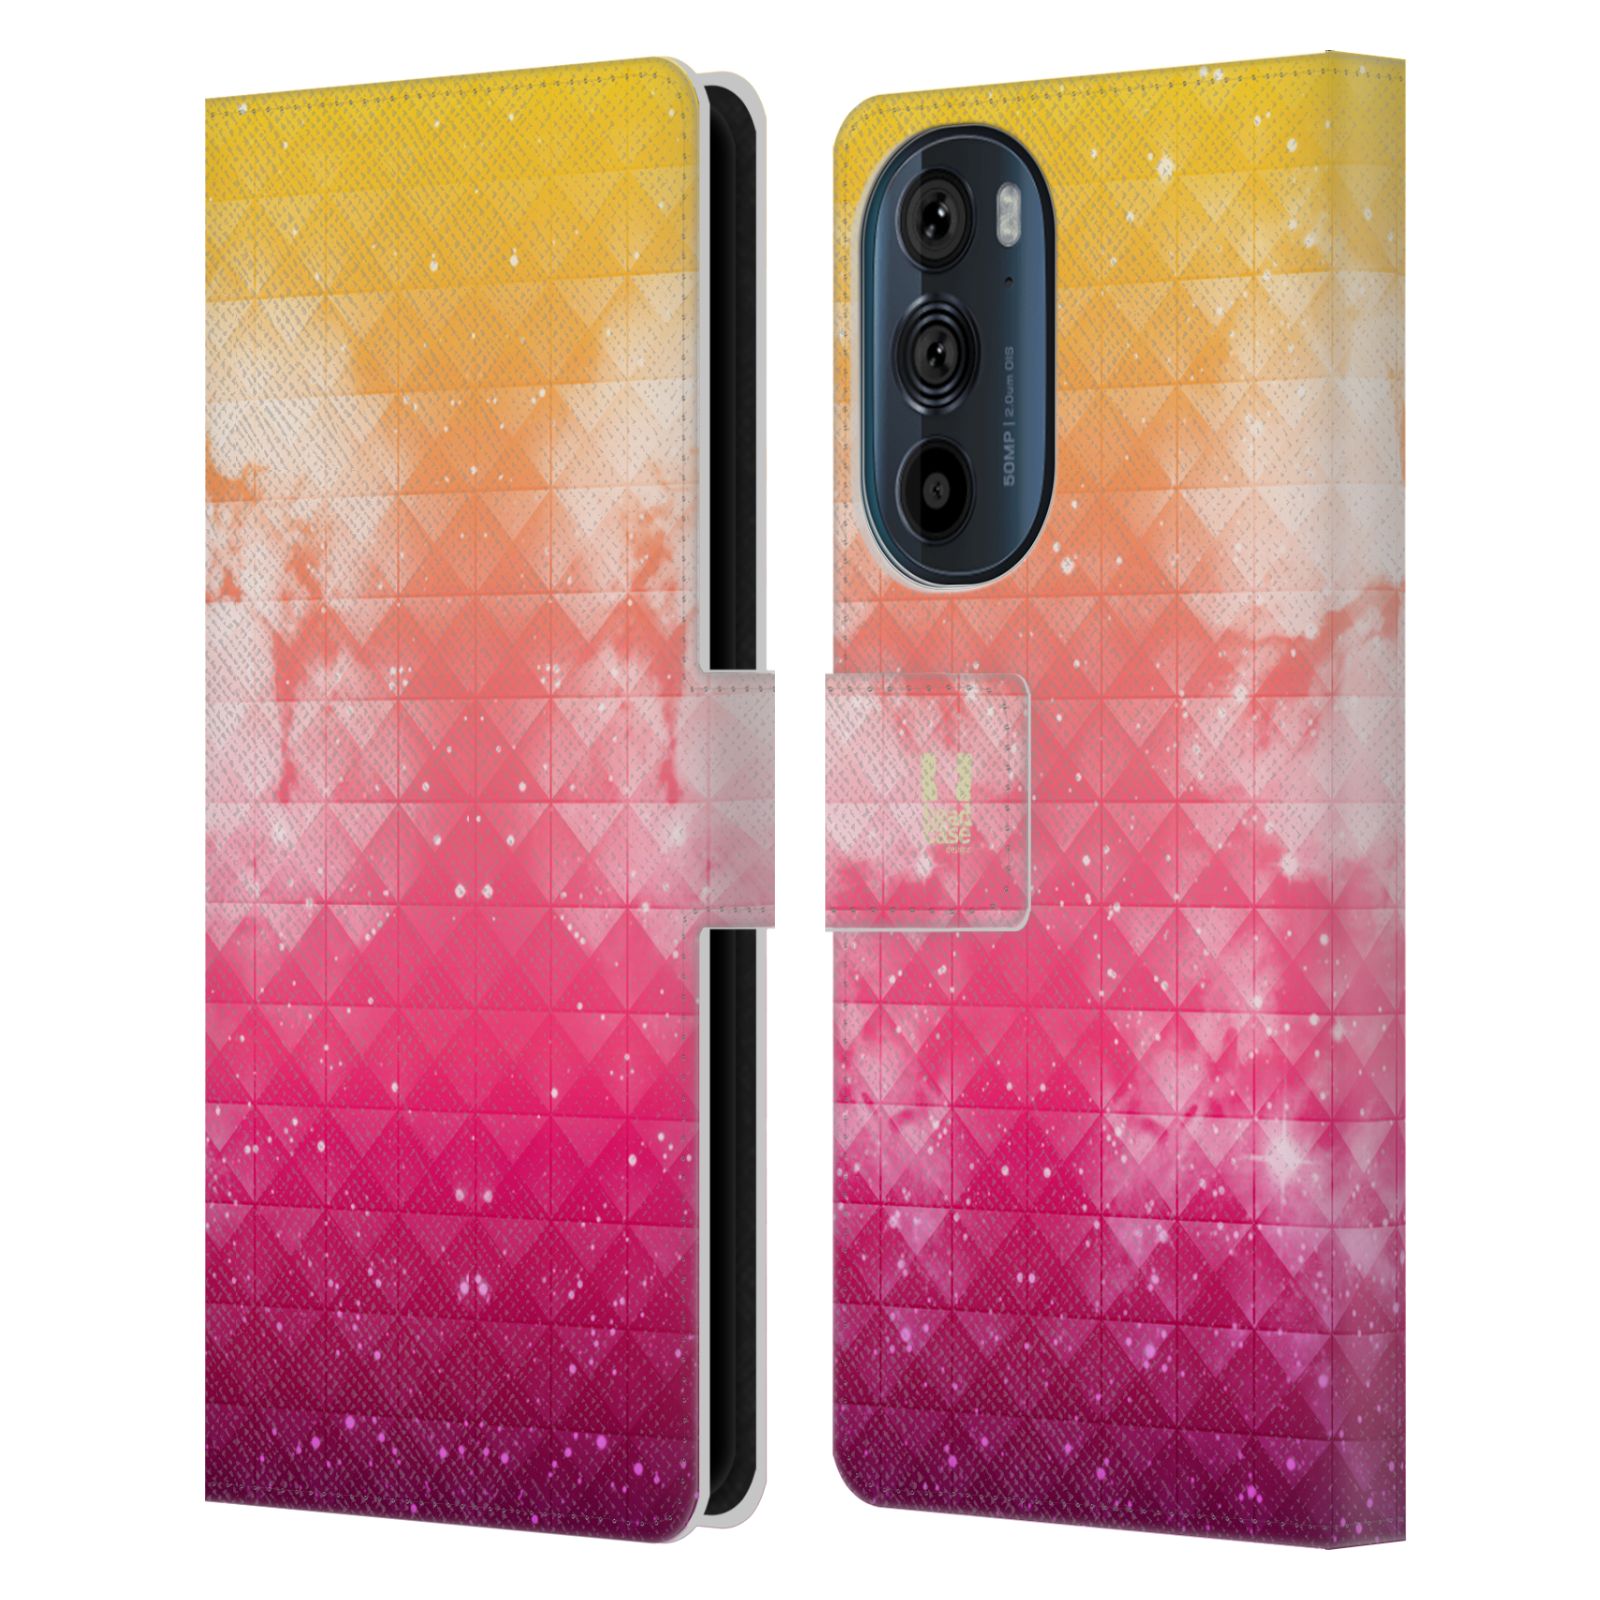 Pouzdro HEAD CASE na mobil Motorola EDGE 30 barevná vesmírná mlhovina oranžová a růžová